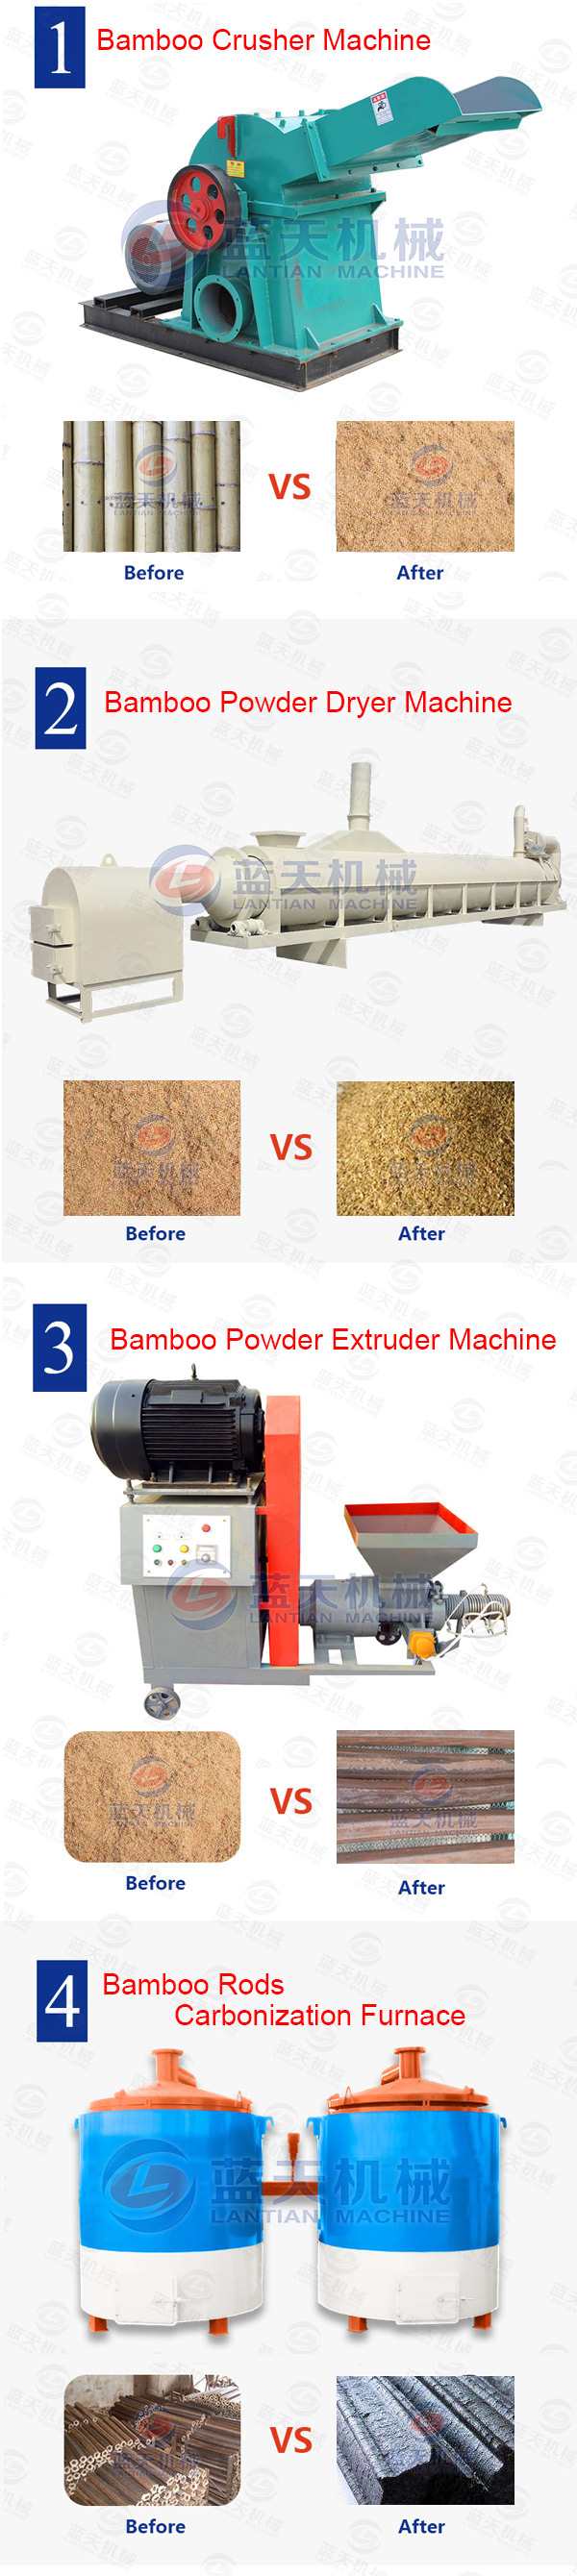 Bamboo Powder Extruder Machine